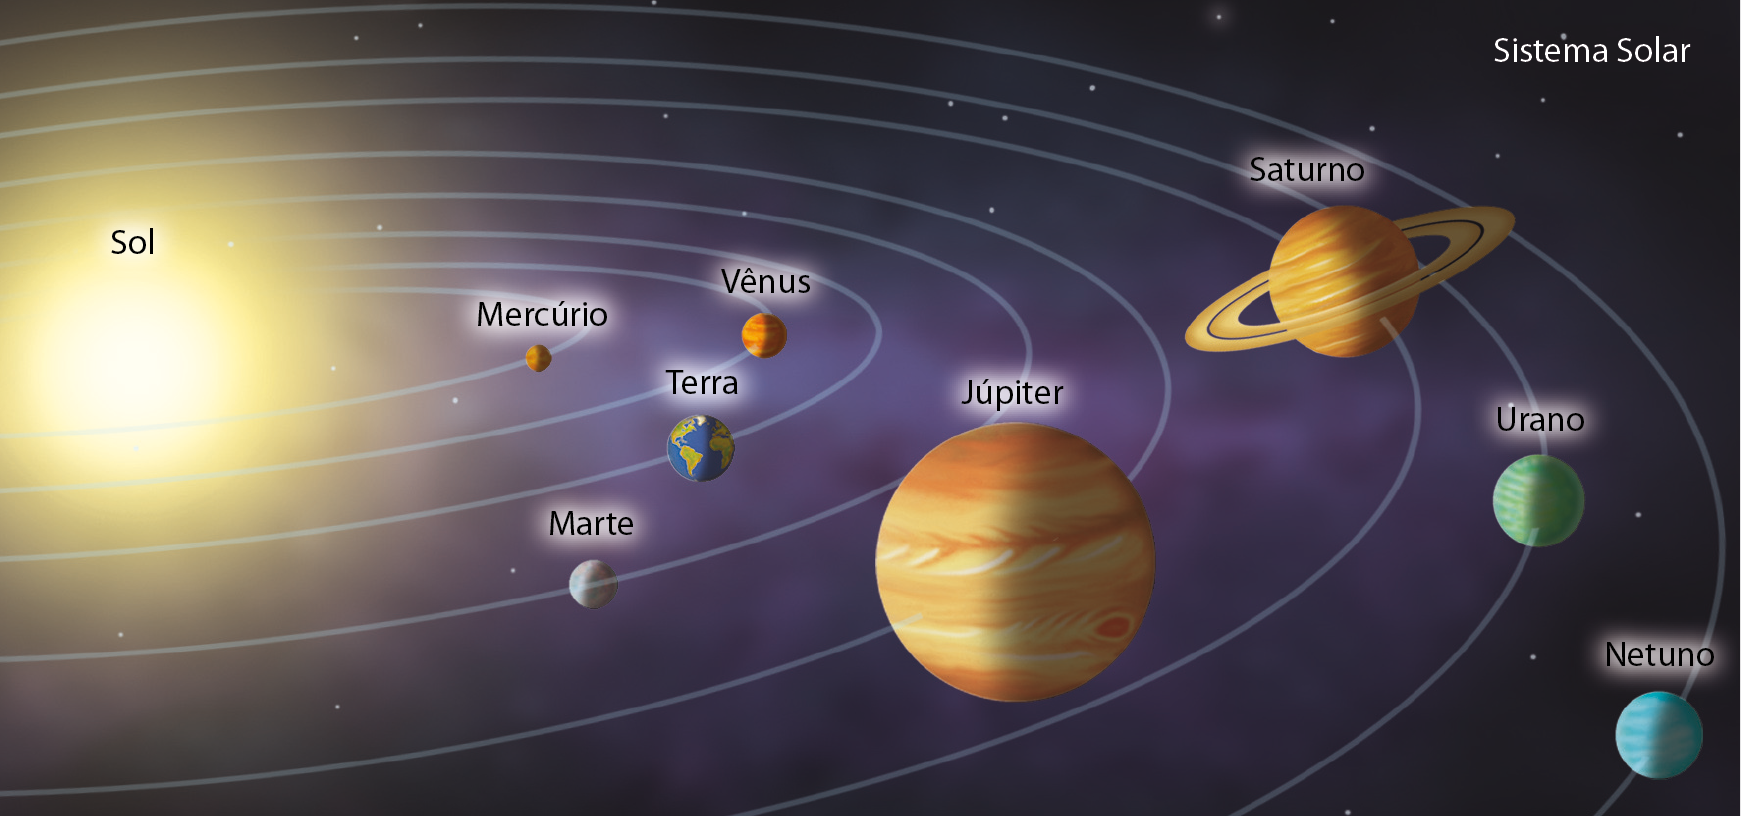 Ilustração. Sistema solar. À esquerda, o sol. à direita, elipses com os planetas: Mercúrio, Vênus, Terra, Marte, Júpiter, Saturno, Urano, Netuno.